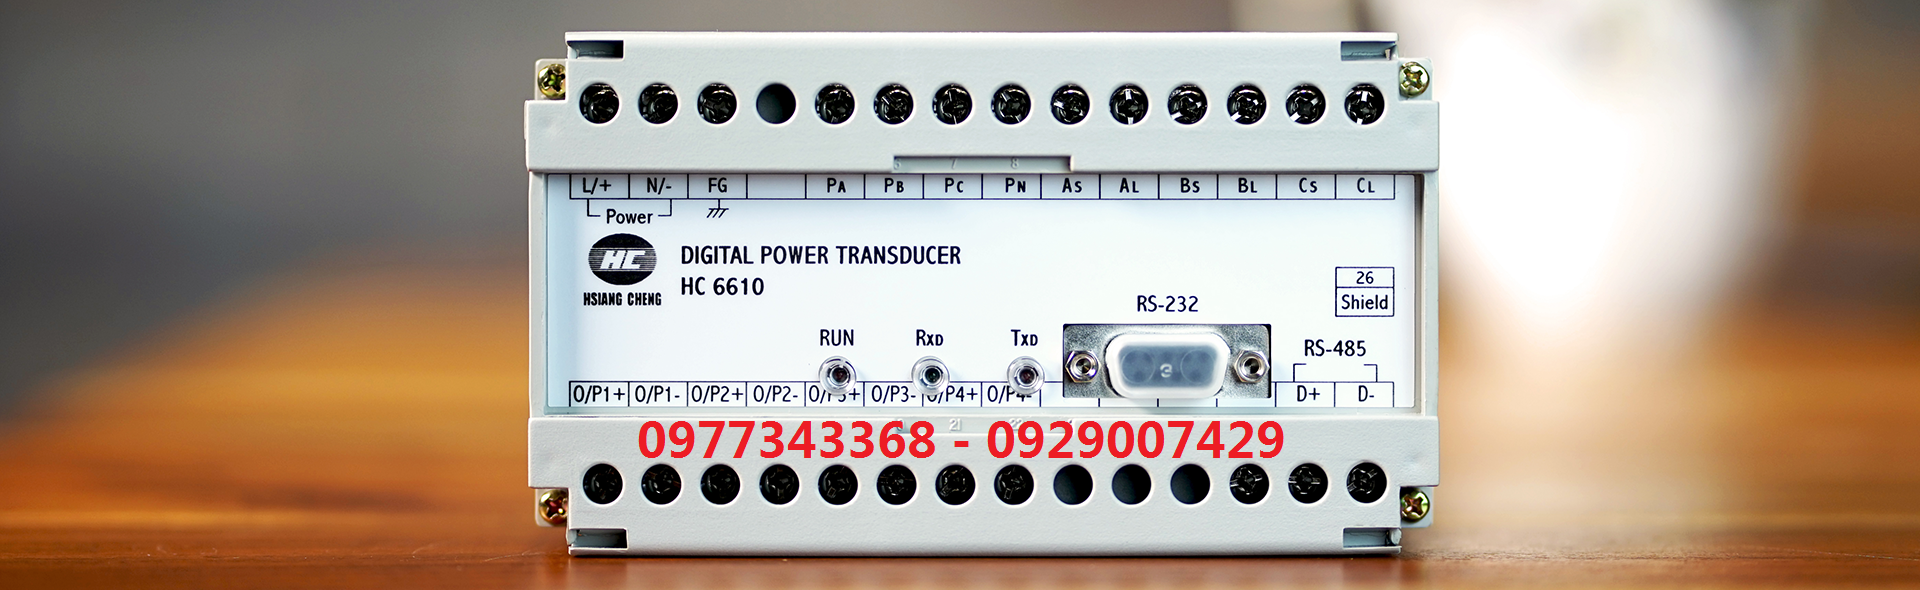 Bộ chuyển đổi nguồn kỹ thuật số HCE HC6610, HC6600, Digital Power Transducer systems HC6610